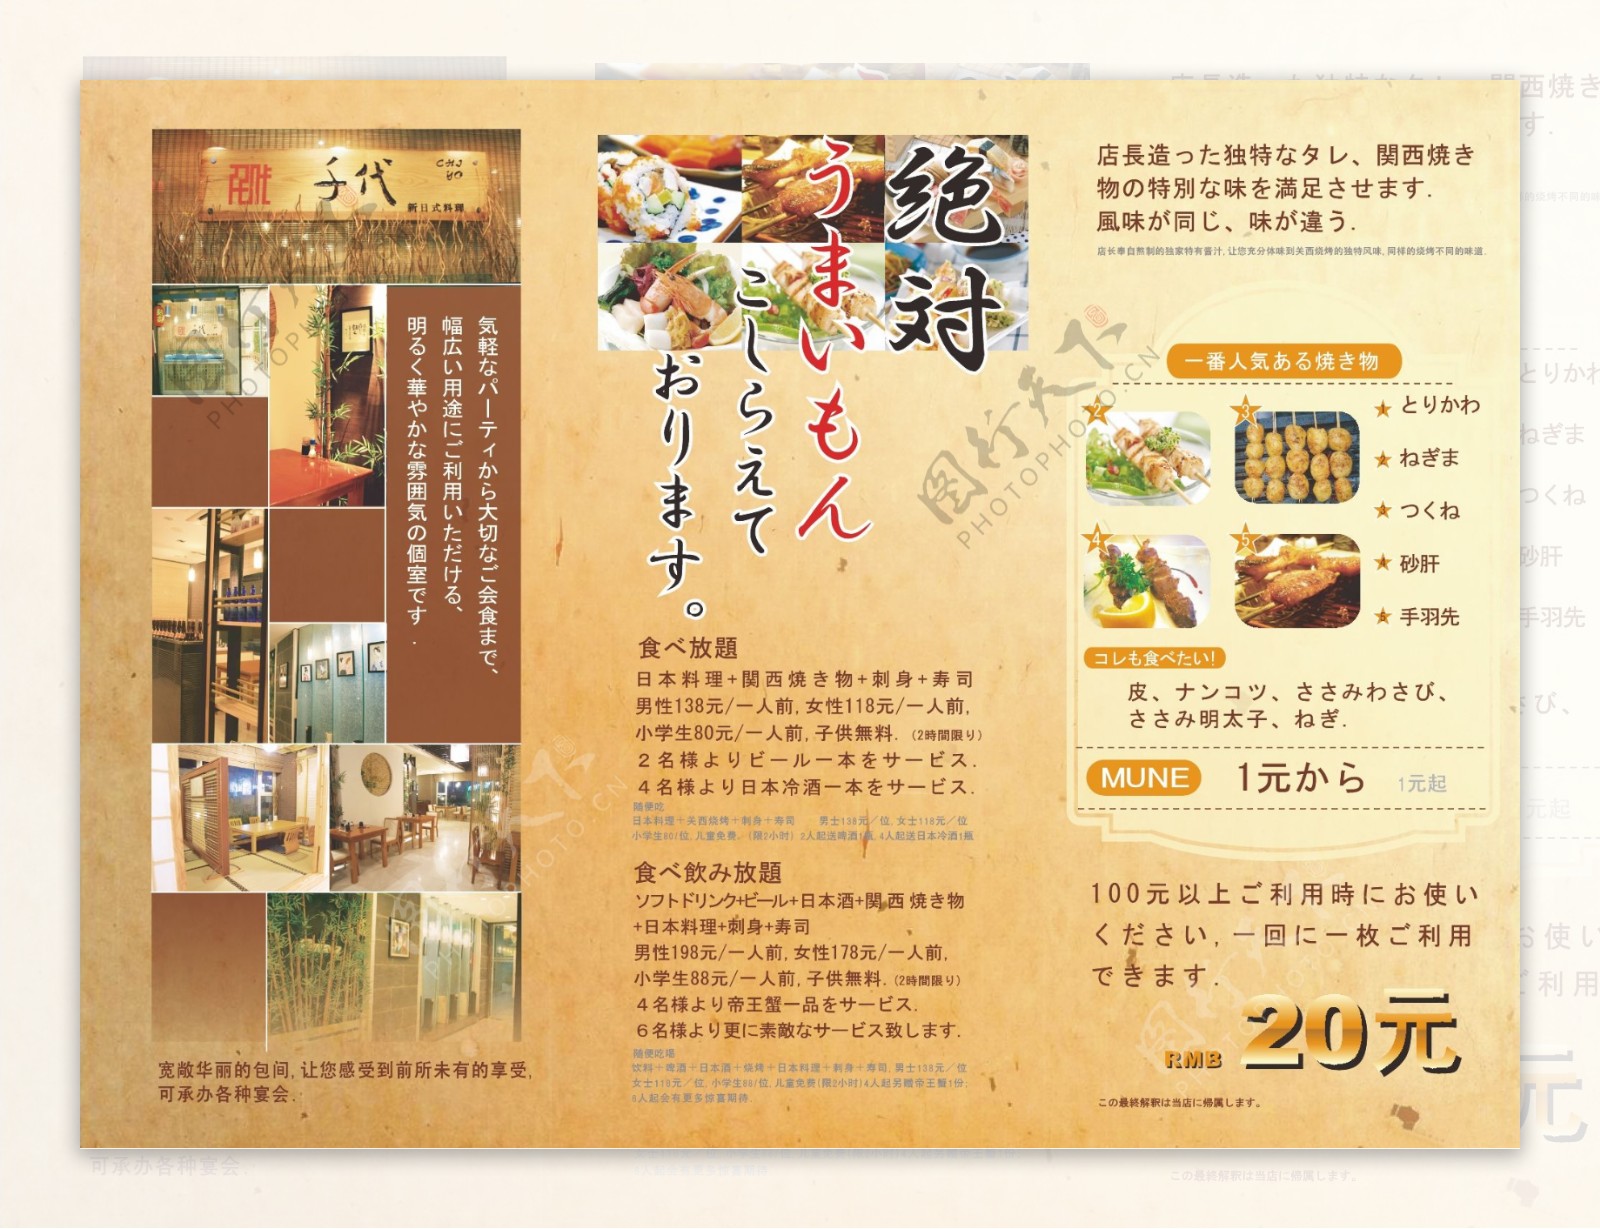 日本料理折页传单